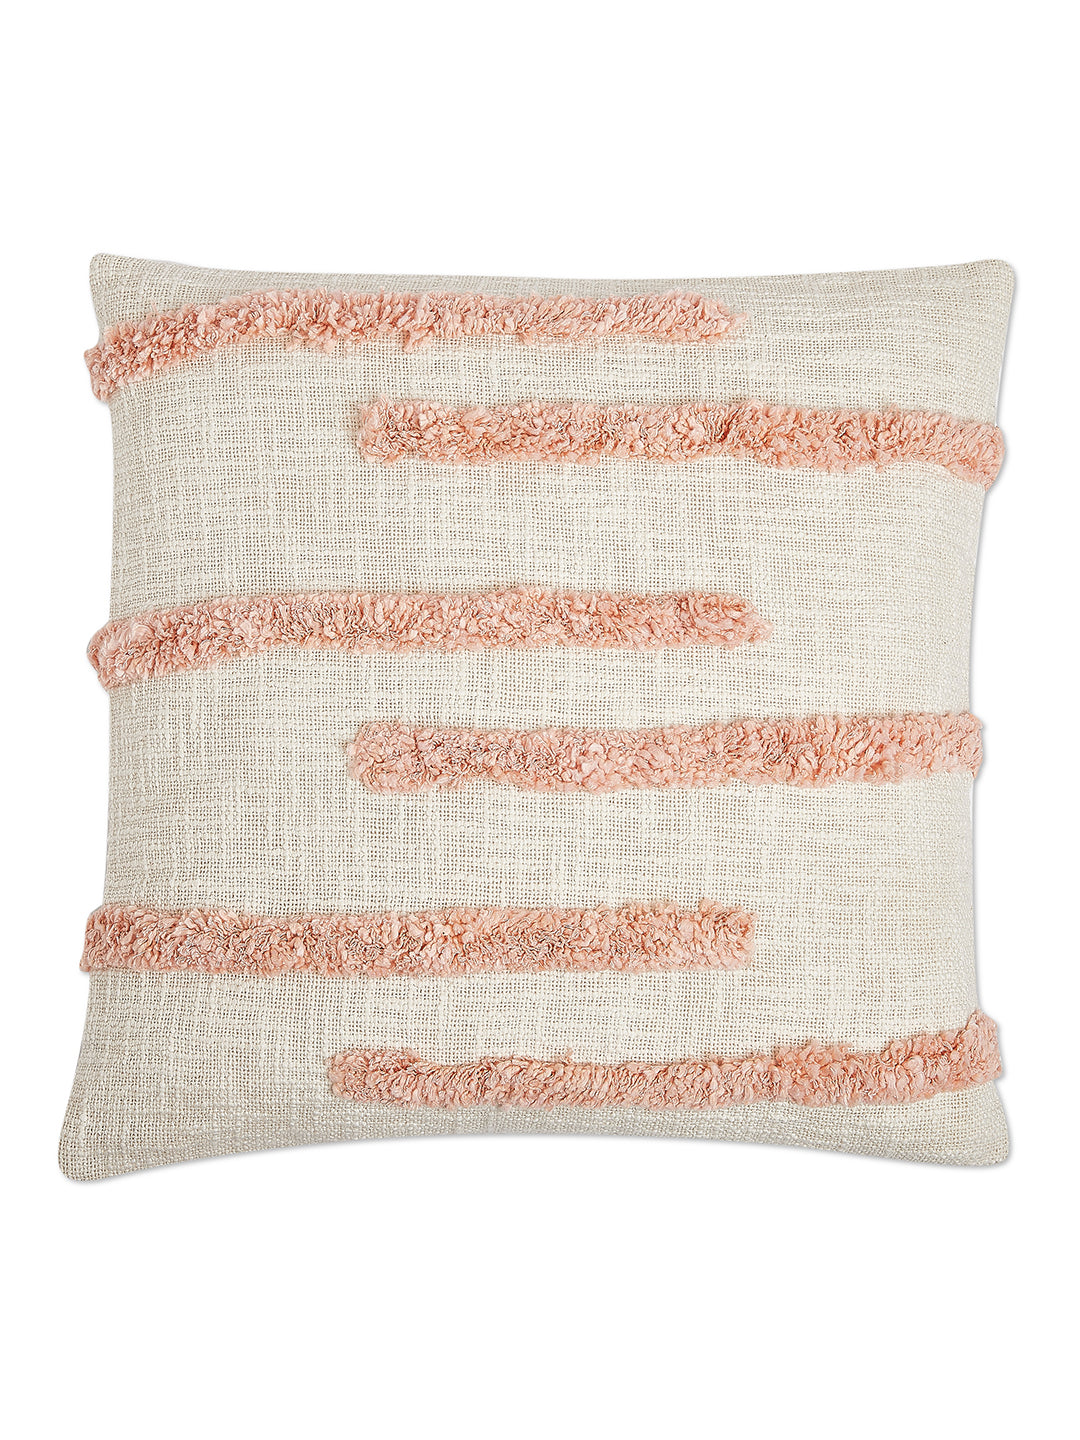 Fuzzy Peach Cushion Cover -  Handmade